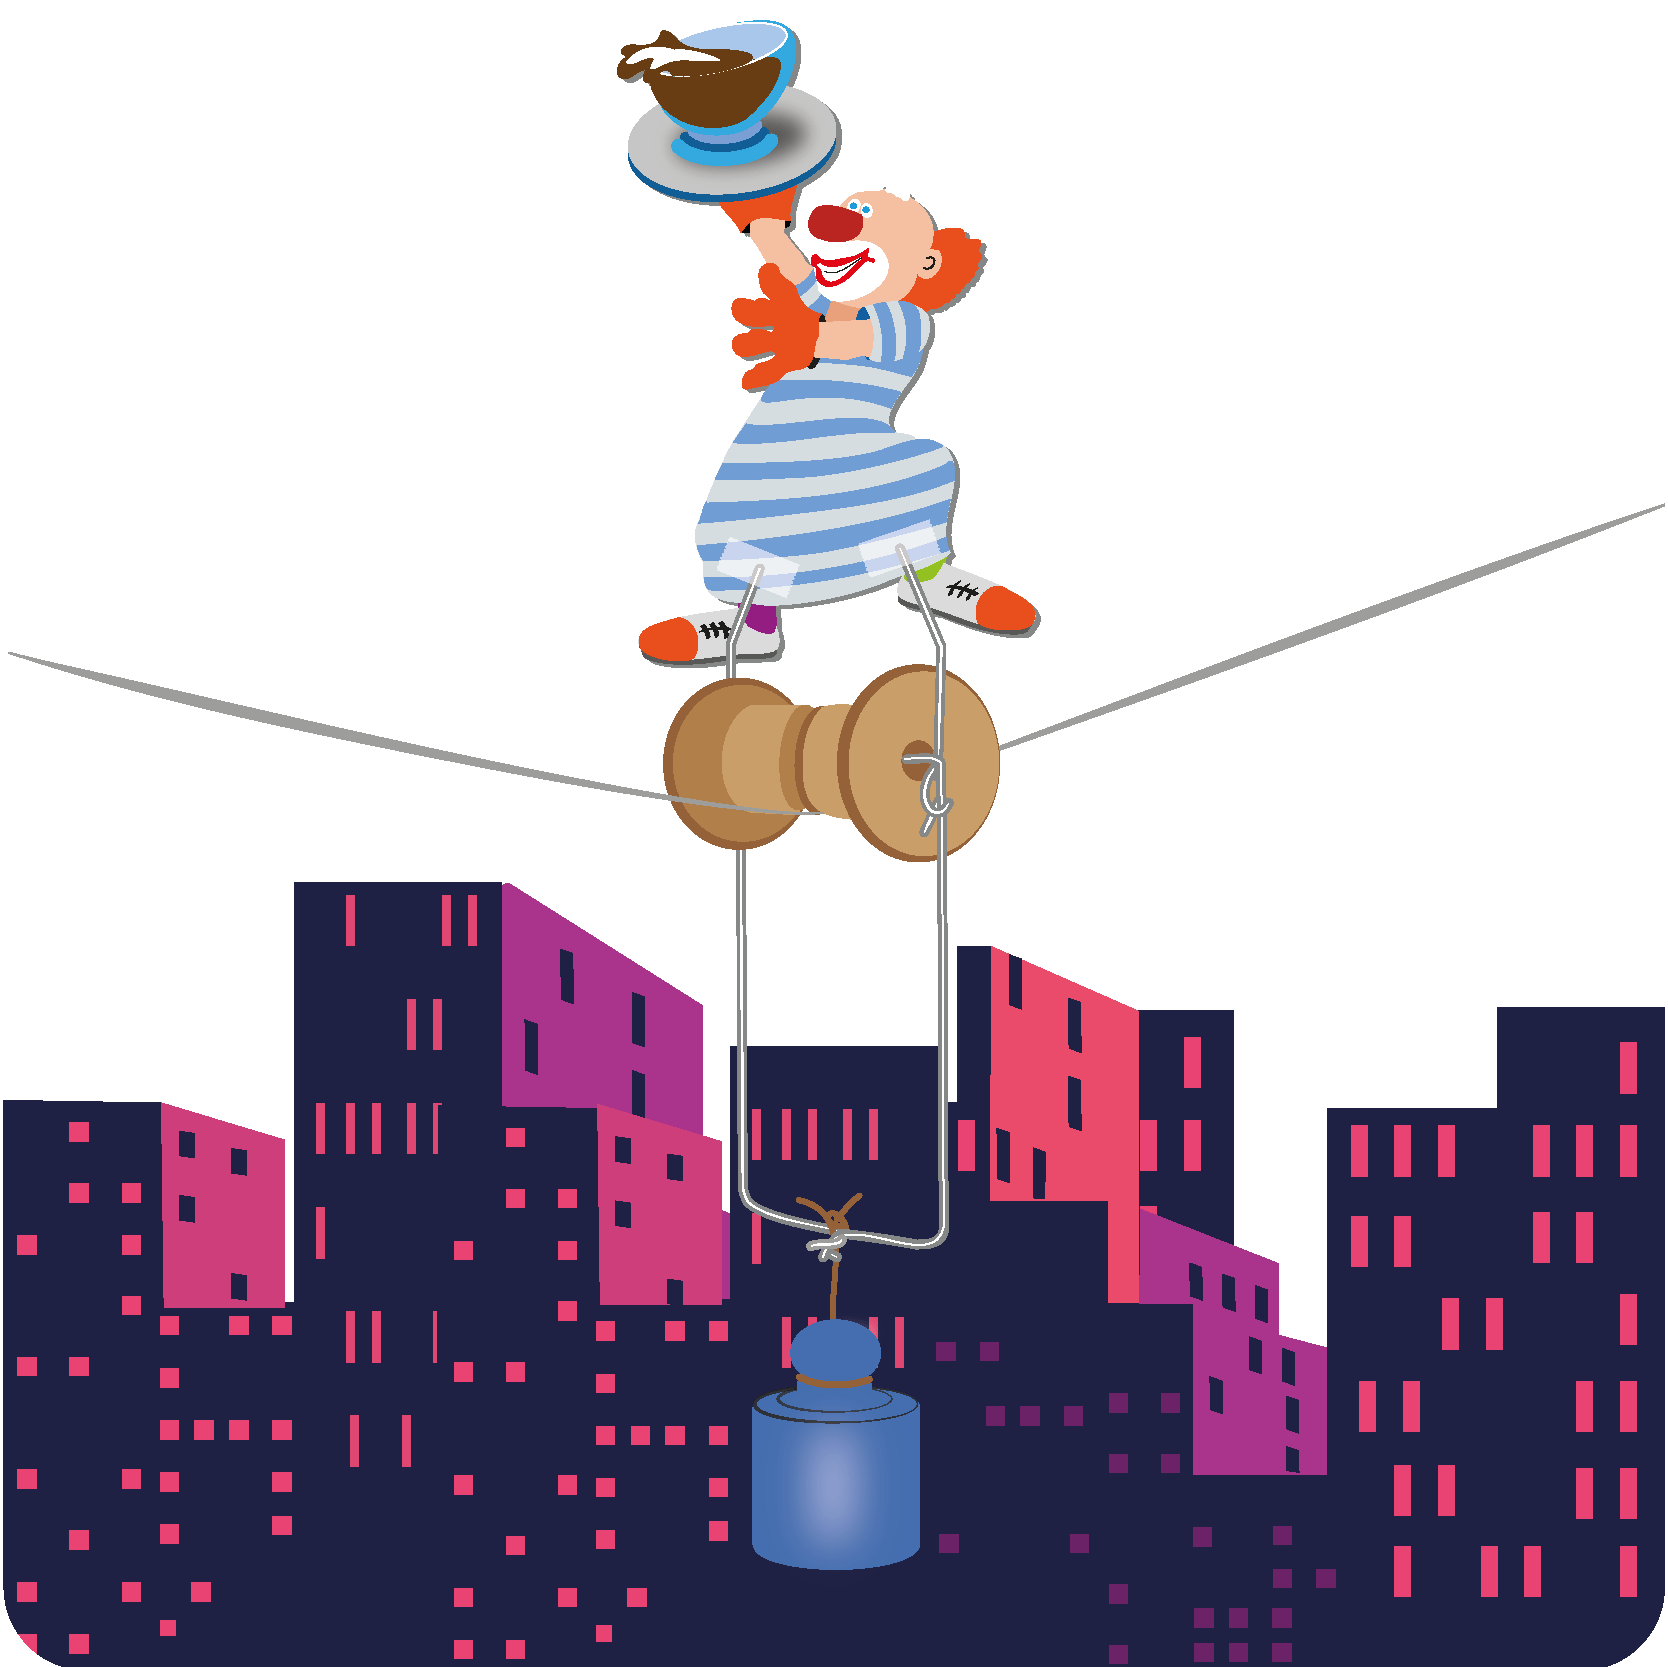 Illustration für Lernmedien aller Bildungsbereiche: Im Physik-Experiment gerät der mutig balancierende Kellner-Clown auf dem Hochseil dank Stabilisierung durch ein starkes Gegengewicht nie in Schräglage.